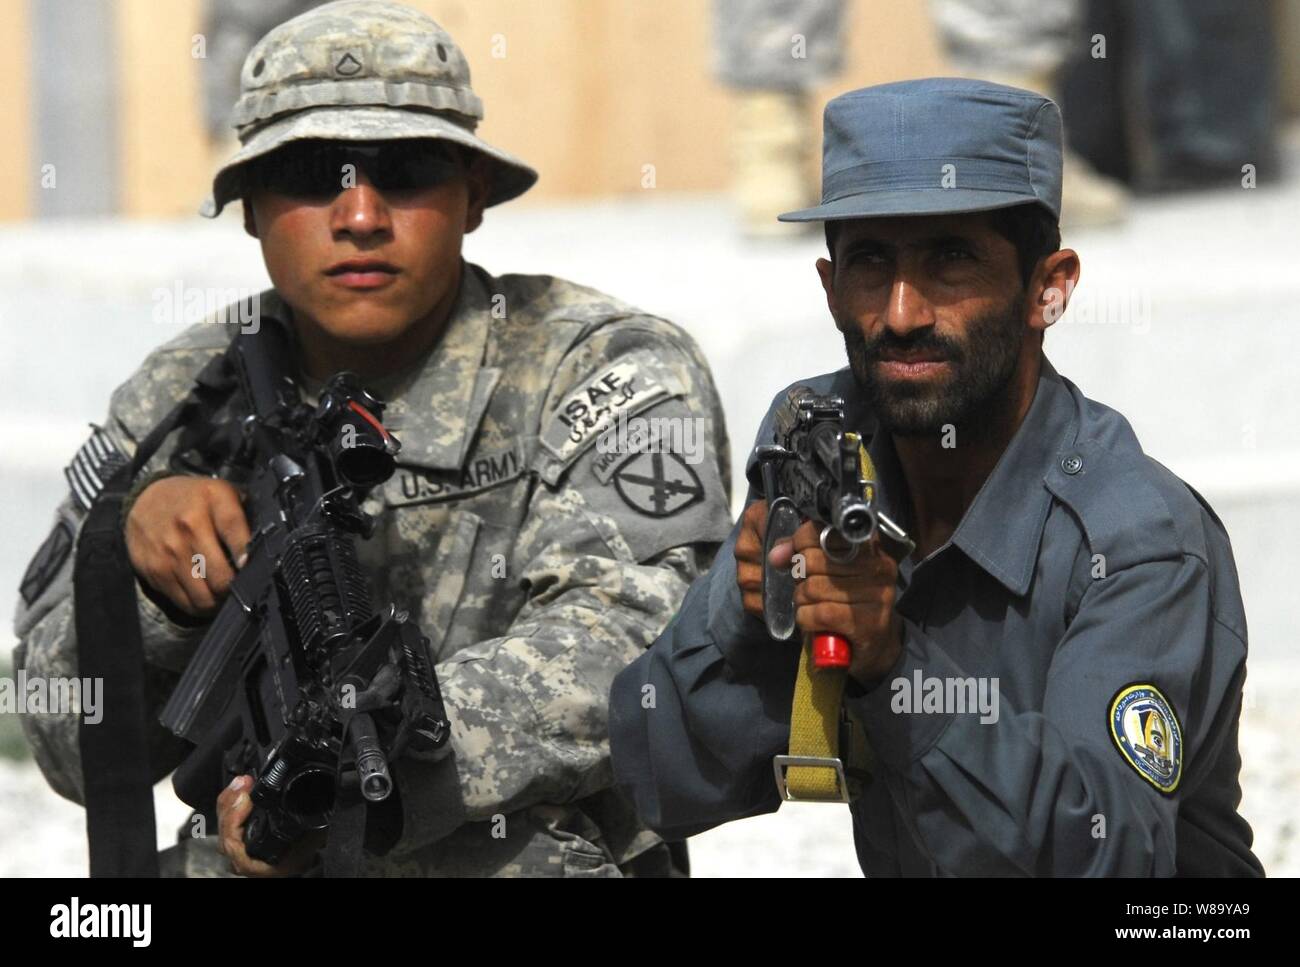 Stati Uniti Pfc dell'esercito. Alejandro Orona assiste Polizia nazionale afgana durante il corso di formazione presso la polizia afgana sede in Charreh Dera, Afghanistan, che il 28 agosto, 2010. Orona è dal 1° Battaglione, 87th Reggimento di Fanteria, 1° Brigata Team di combattimento, decimo Montagna divisione. Foto Stock